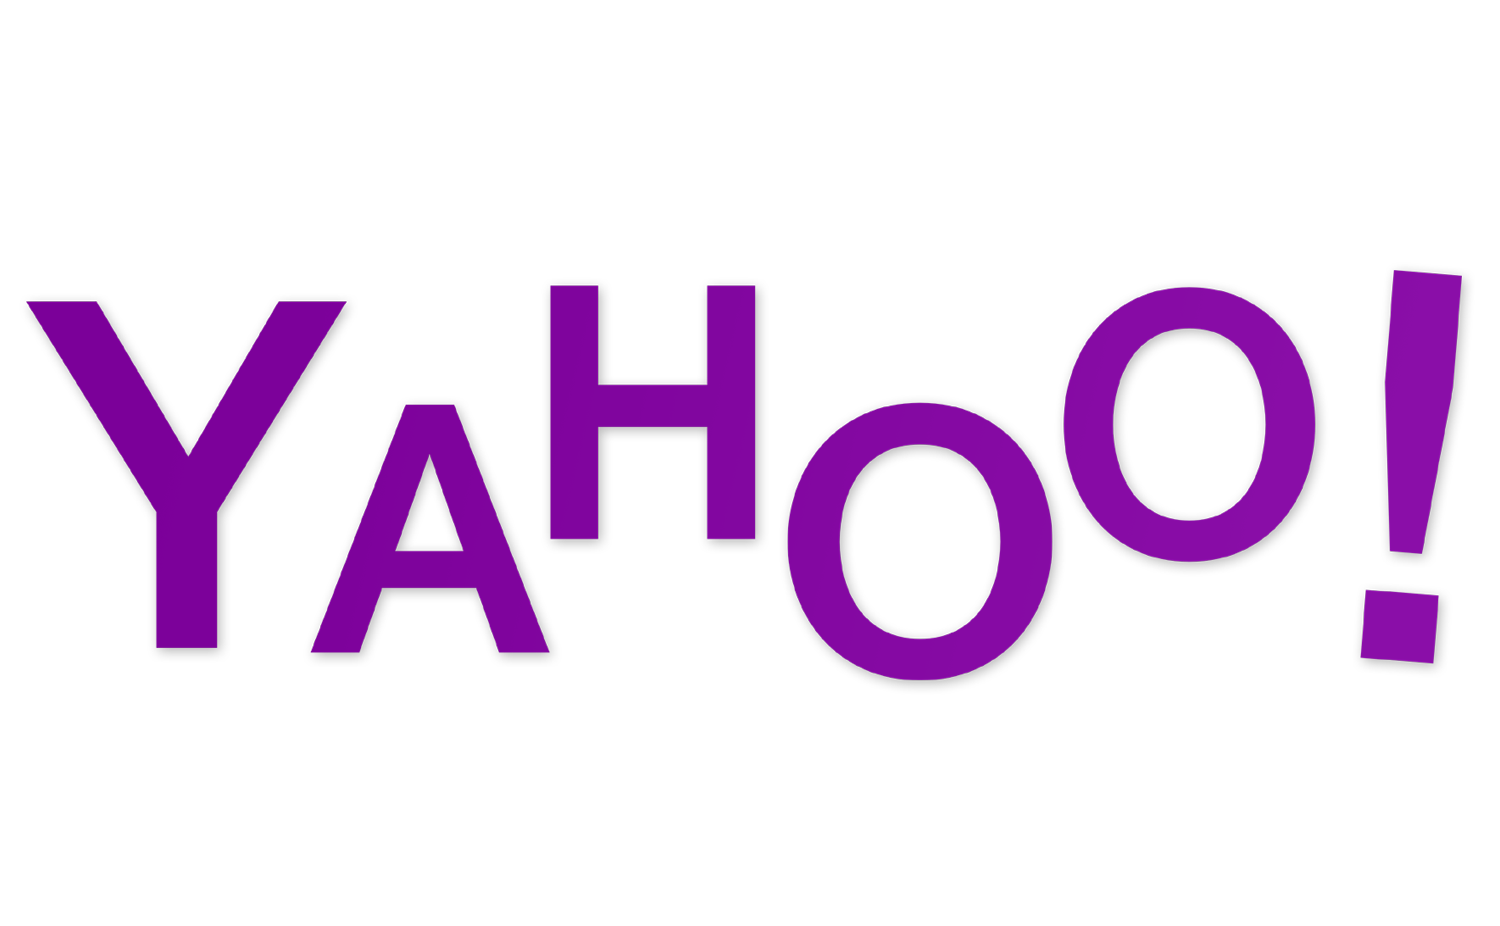 Famous Logos in Helvetica — Steve Lovelace